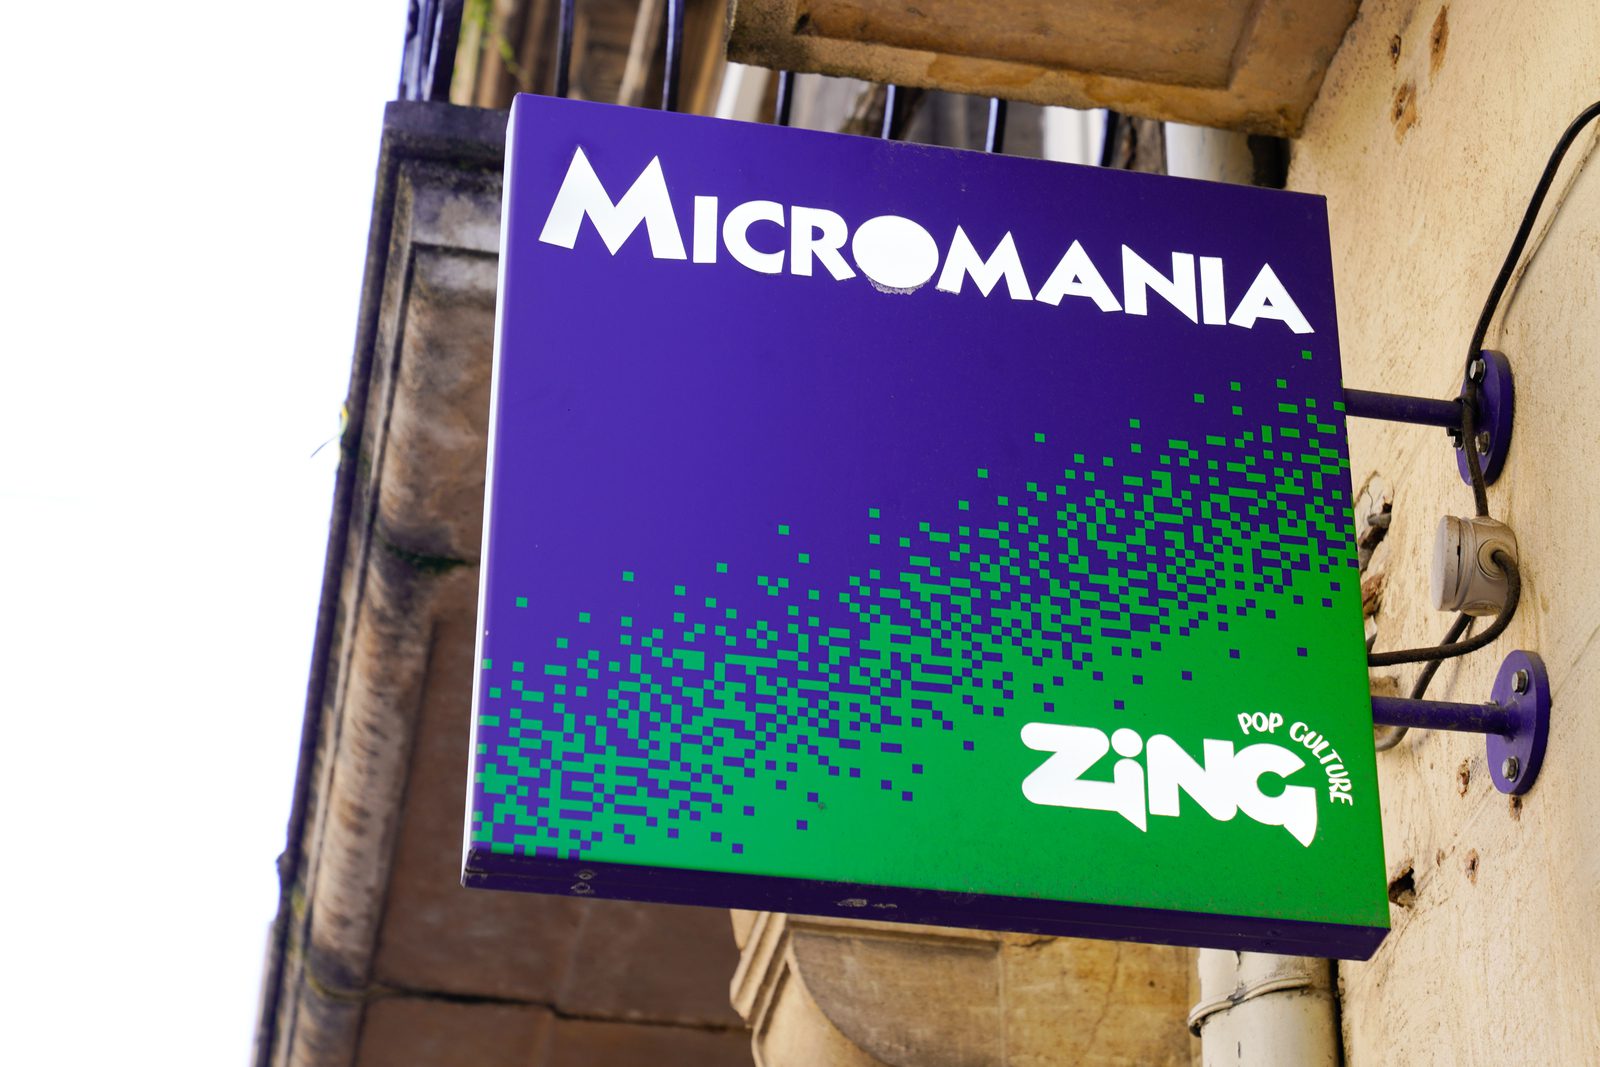 Micromania-varumärke fäst för “bedräglig kommersiell praxis”